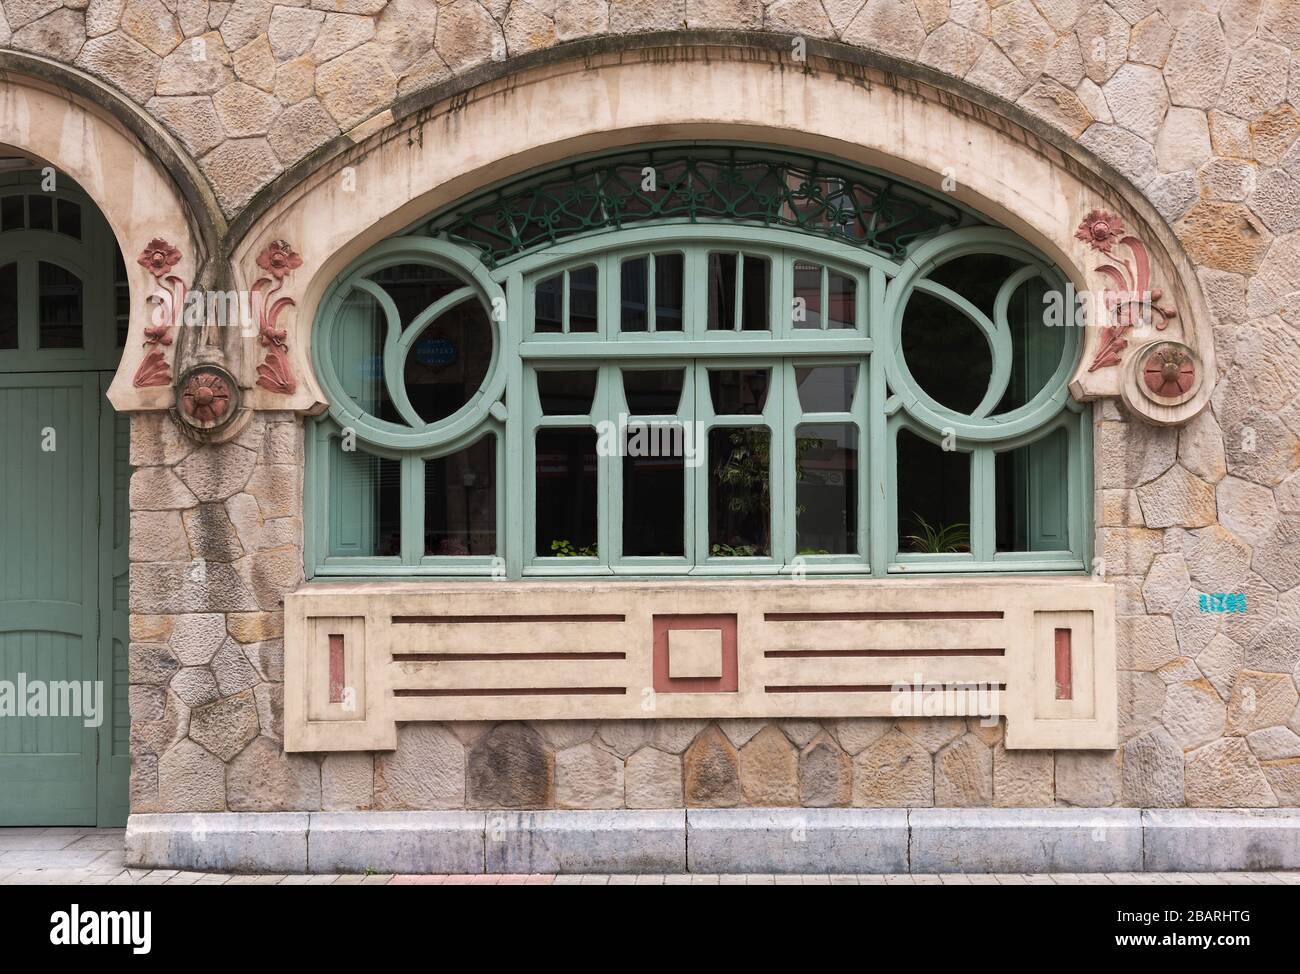 Jugendstilfenster in der Altstadt von Bilbao, Spanien Stockfoto